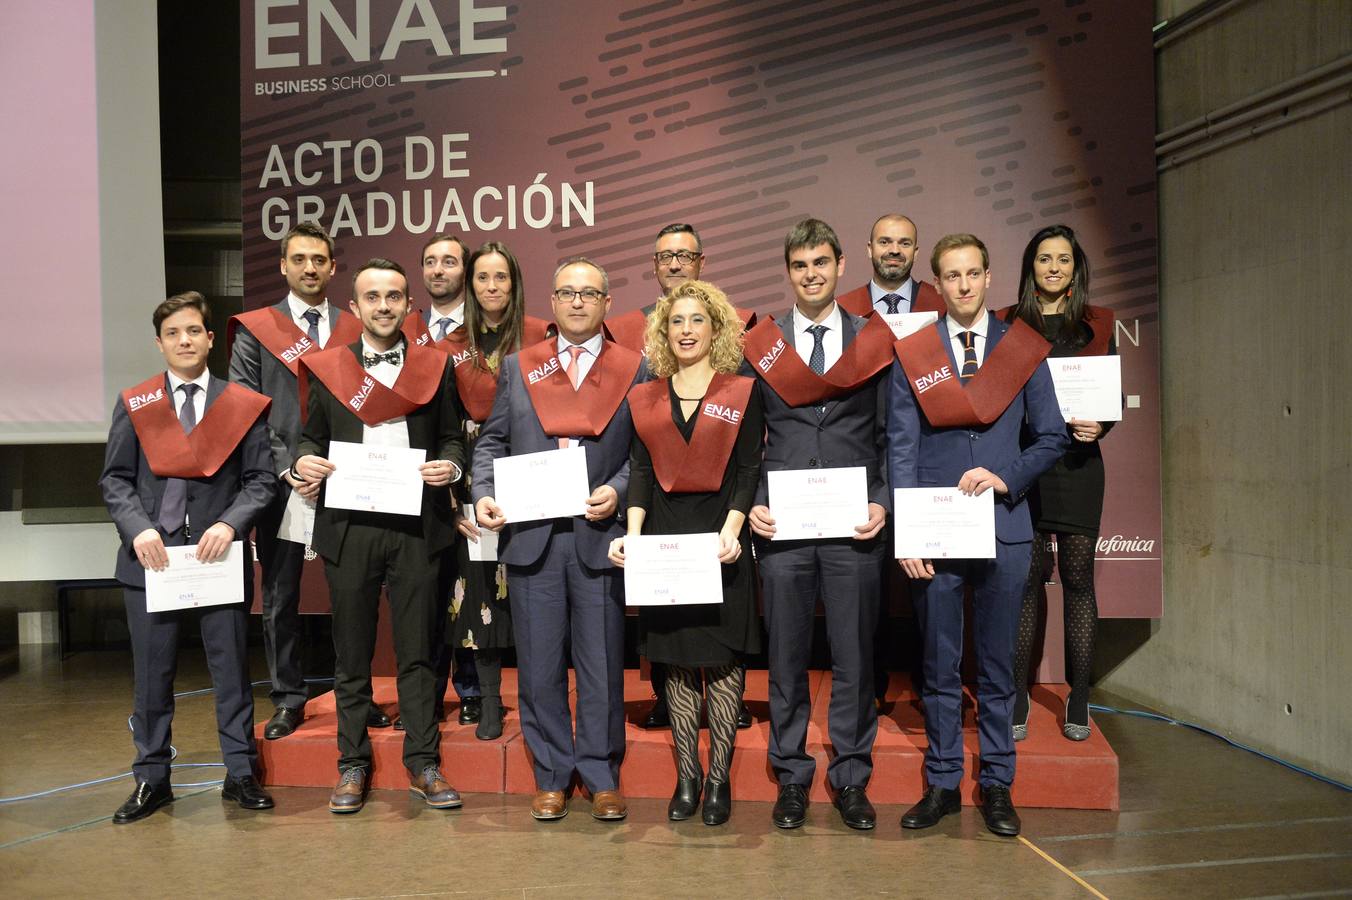 La Facultad de Economía y Empresa de la Universidad de Murcia acogió este viernes el acto de graduación de los alumnos de la ENAE Business Scho